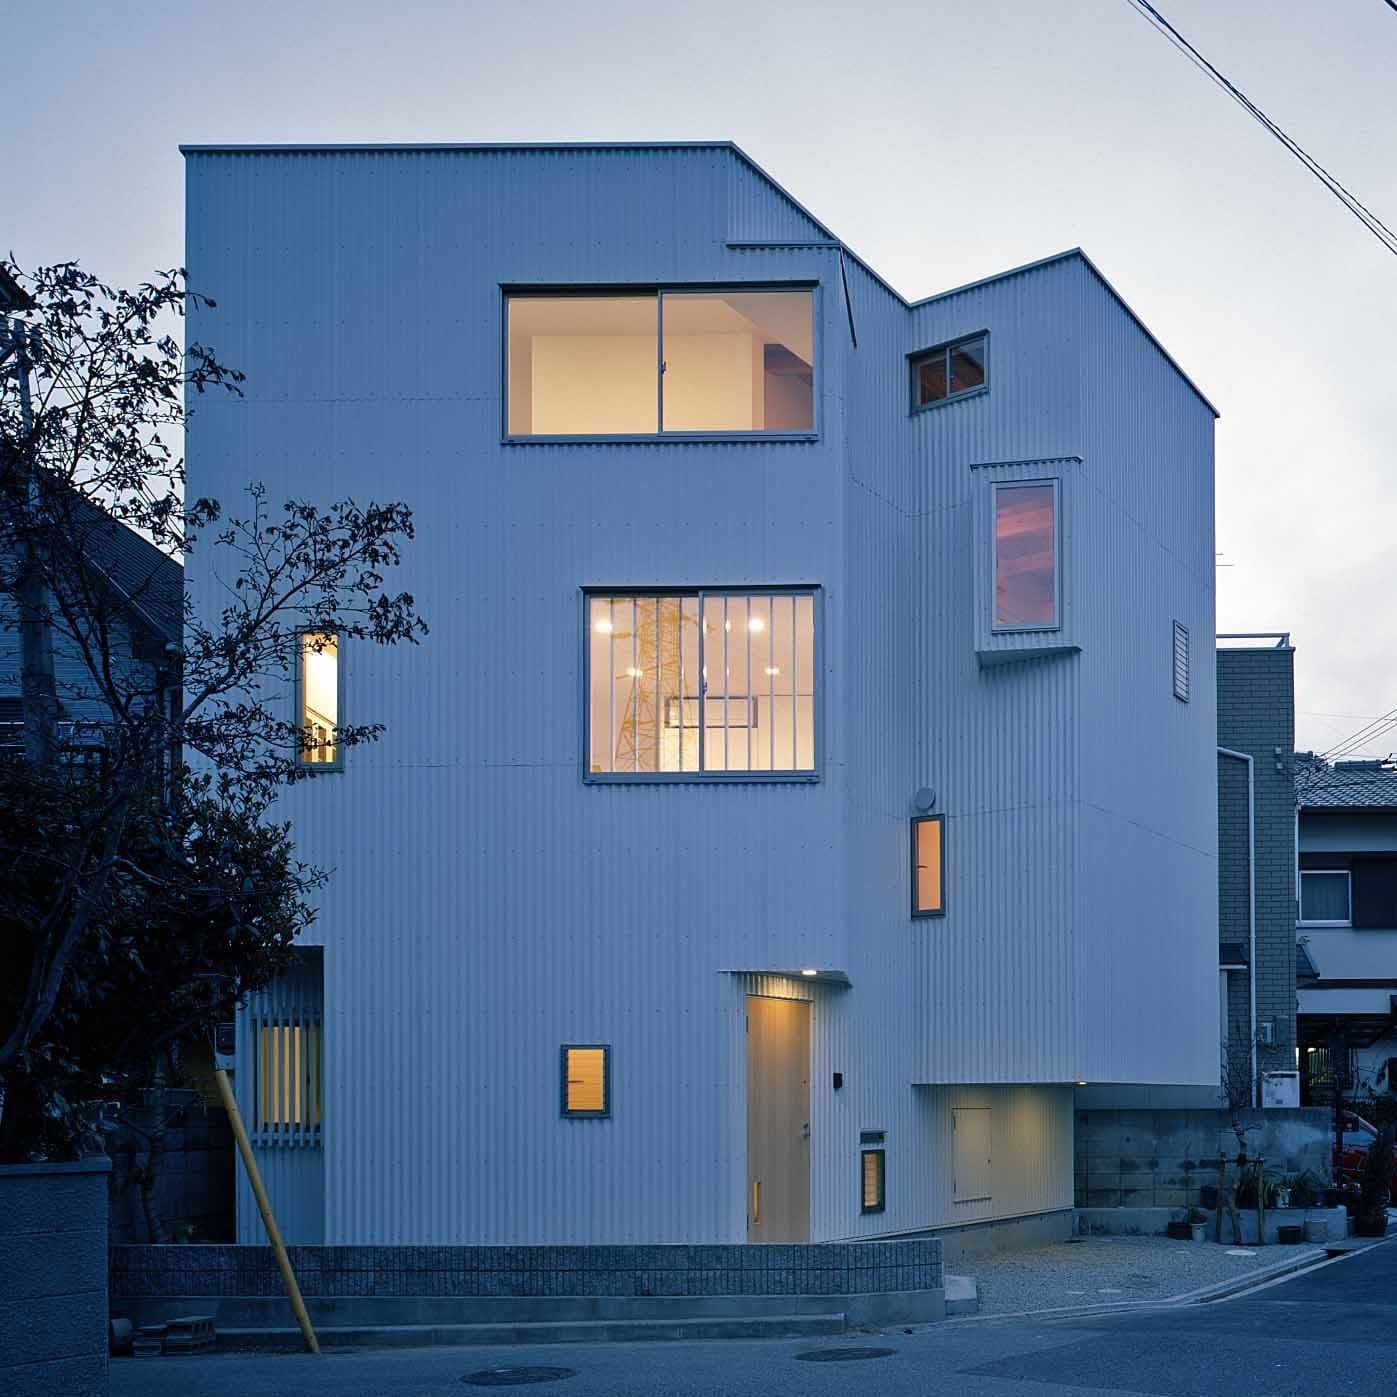 大阪の建築家・中平勝が設計した敷地19坪に建つ木造3階建て2世帯住宅です